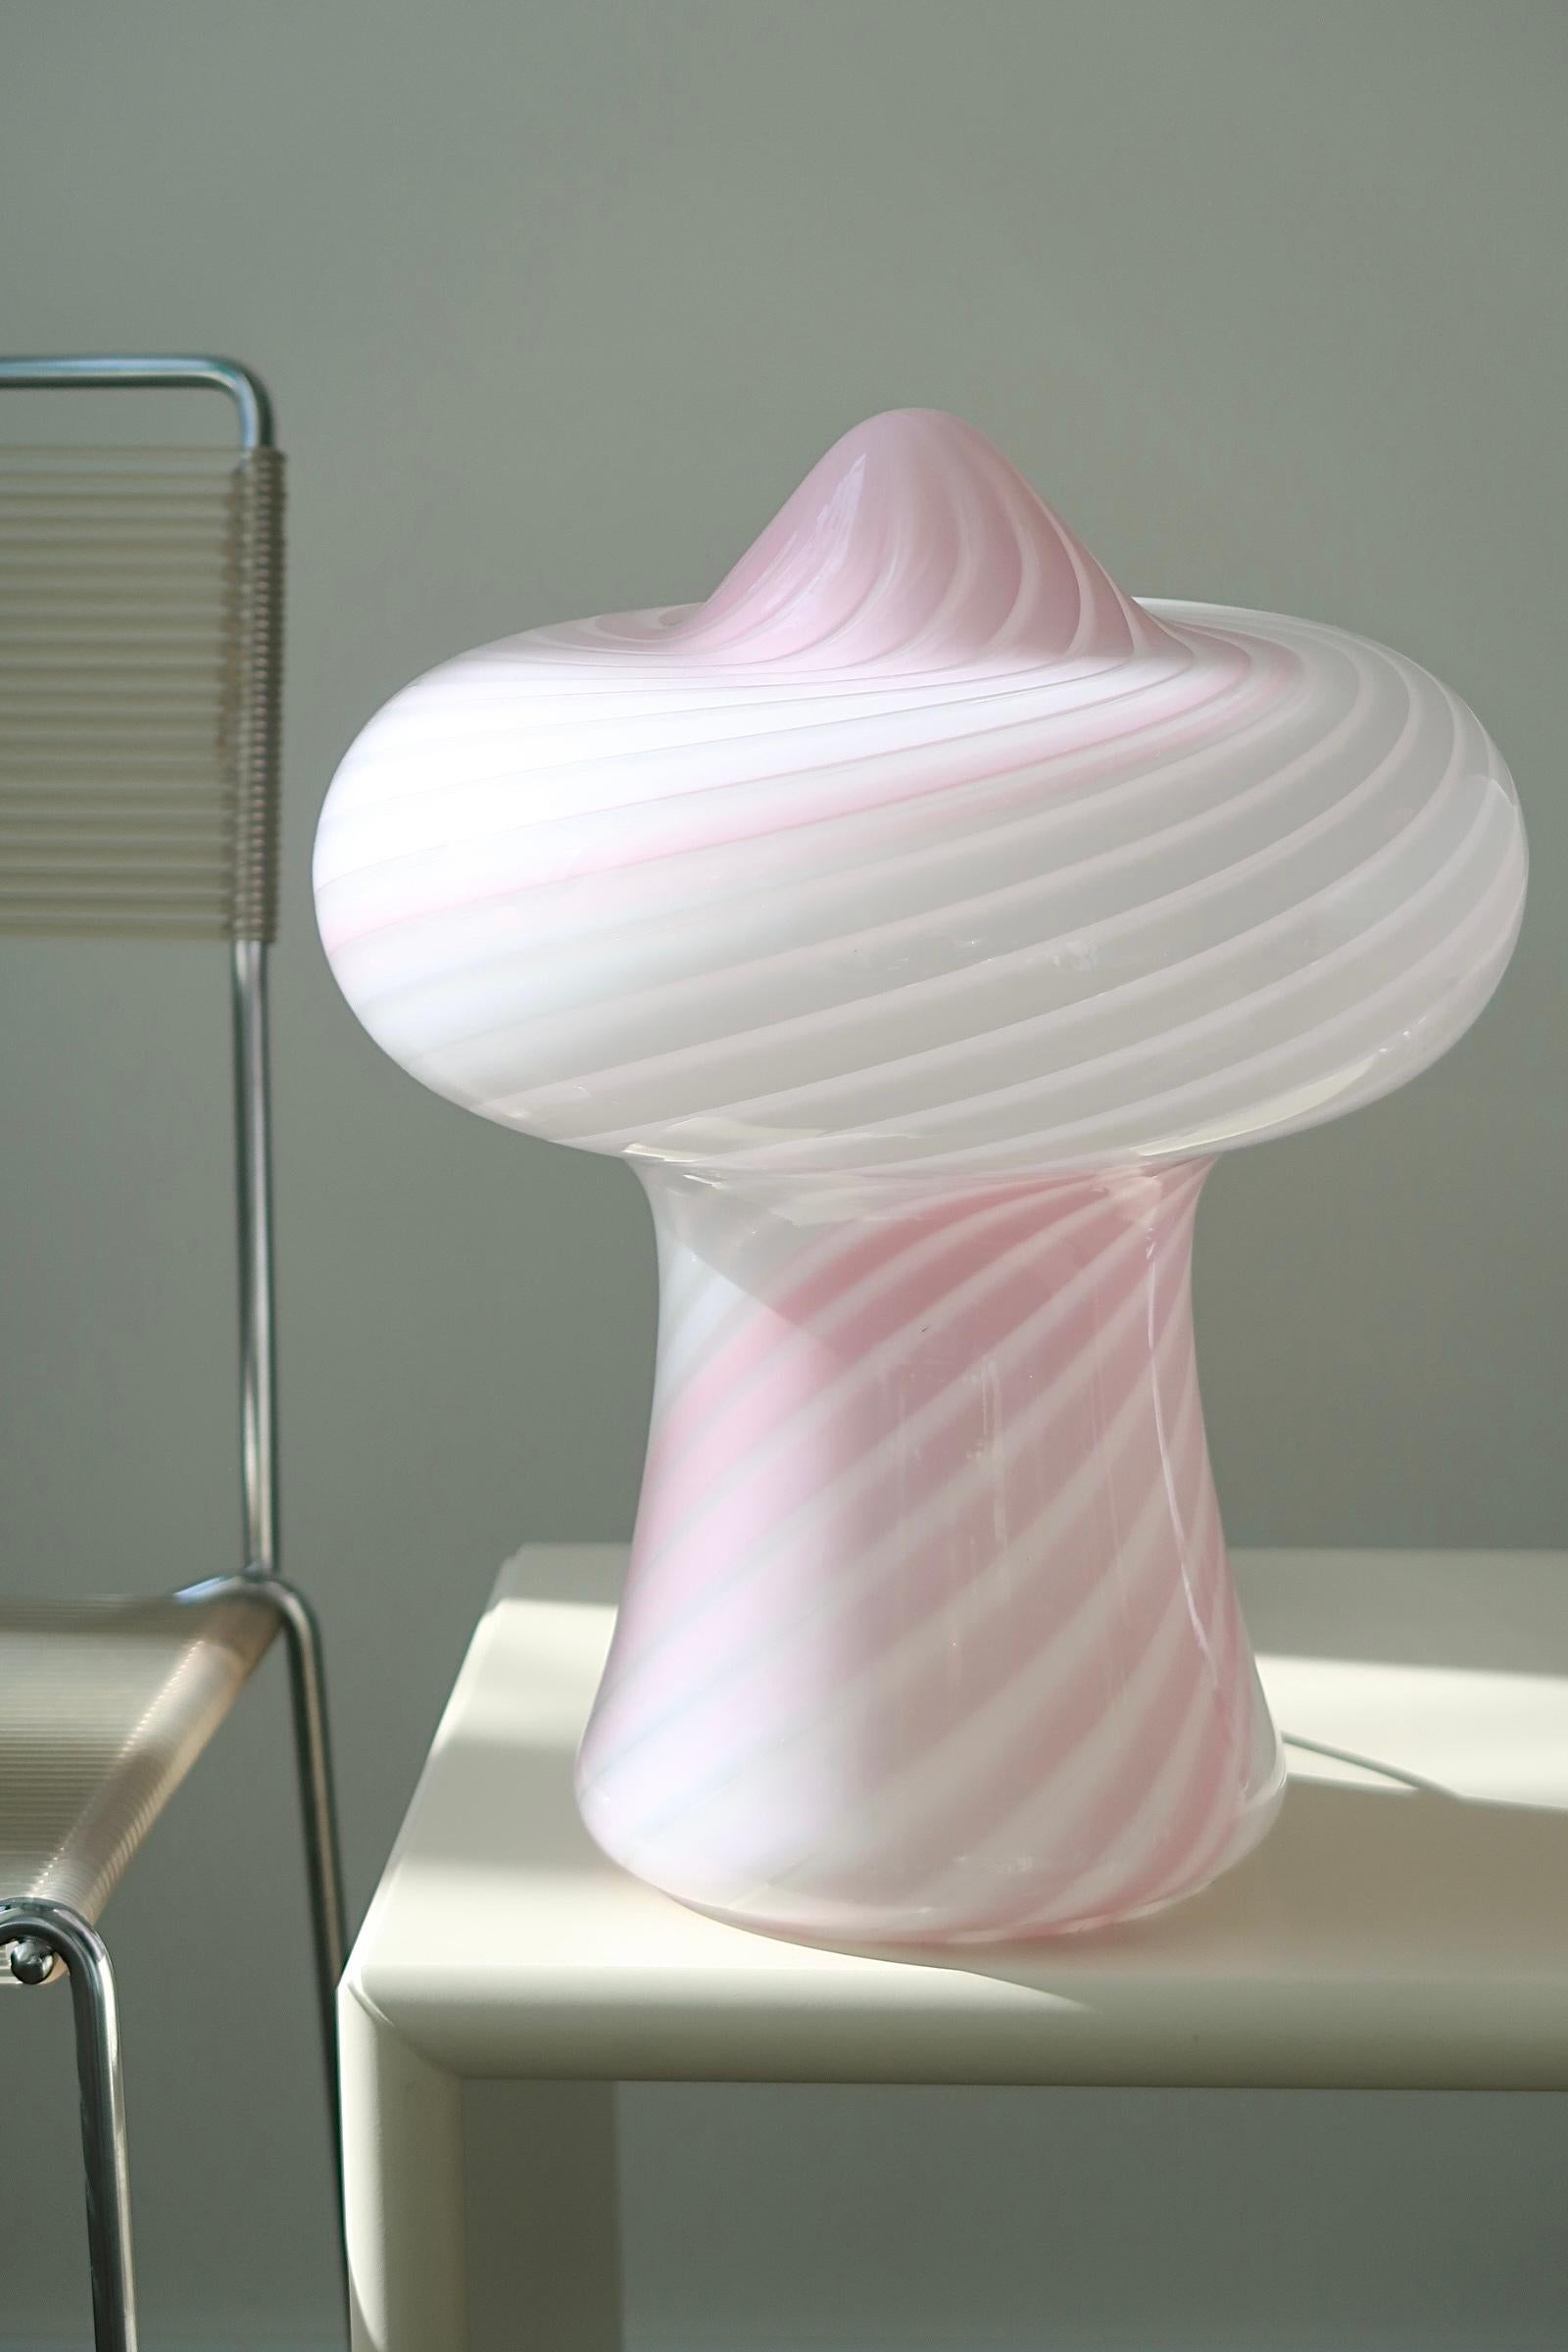 Il n'en reste qu'un seul ! Magnifique lampe champignon de Murano de grande taille. Soufflé à la bouche en verre blanc et rose avec un motif tourbillonnant. Fabriqué à la main en Italie, dans les années 1970, il porte l'étiquette originale de Murano